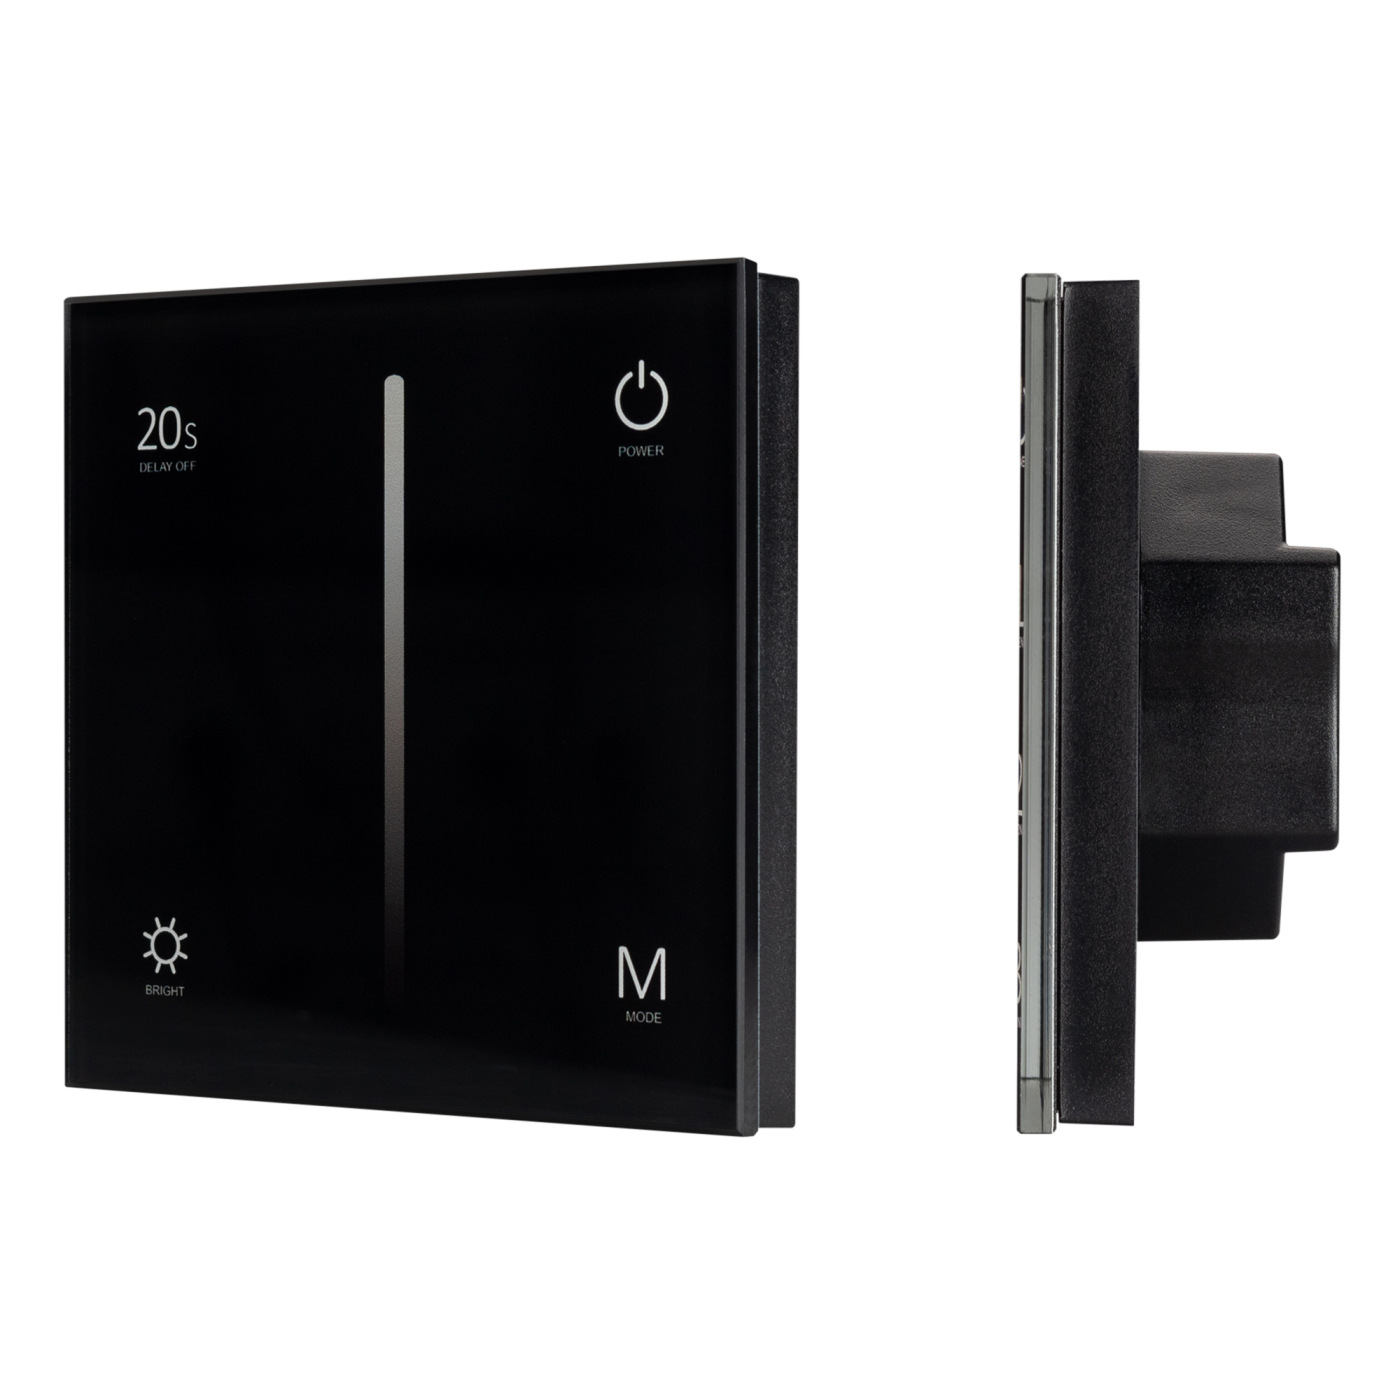 Панель SMART-P35-DIM-IN Black (230V, 0-10V, Sens, 2.4G) (Arlight, IP20 Пластик, 5 лет) панель knob smart p87 dim silver 3v 1 зона 2 4g arlight ip20 пластик 5 лет